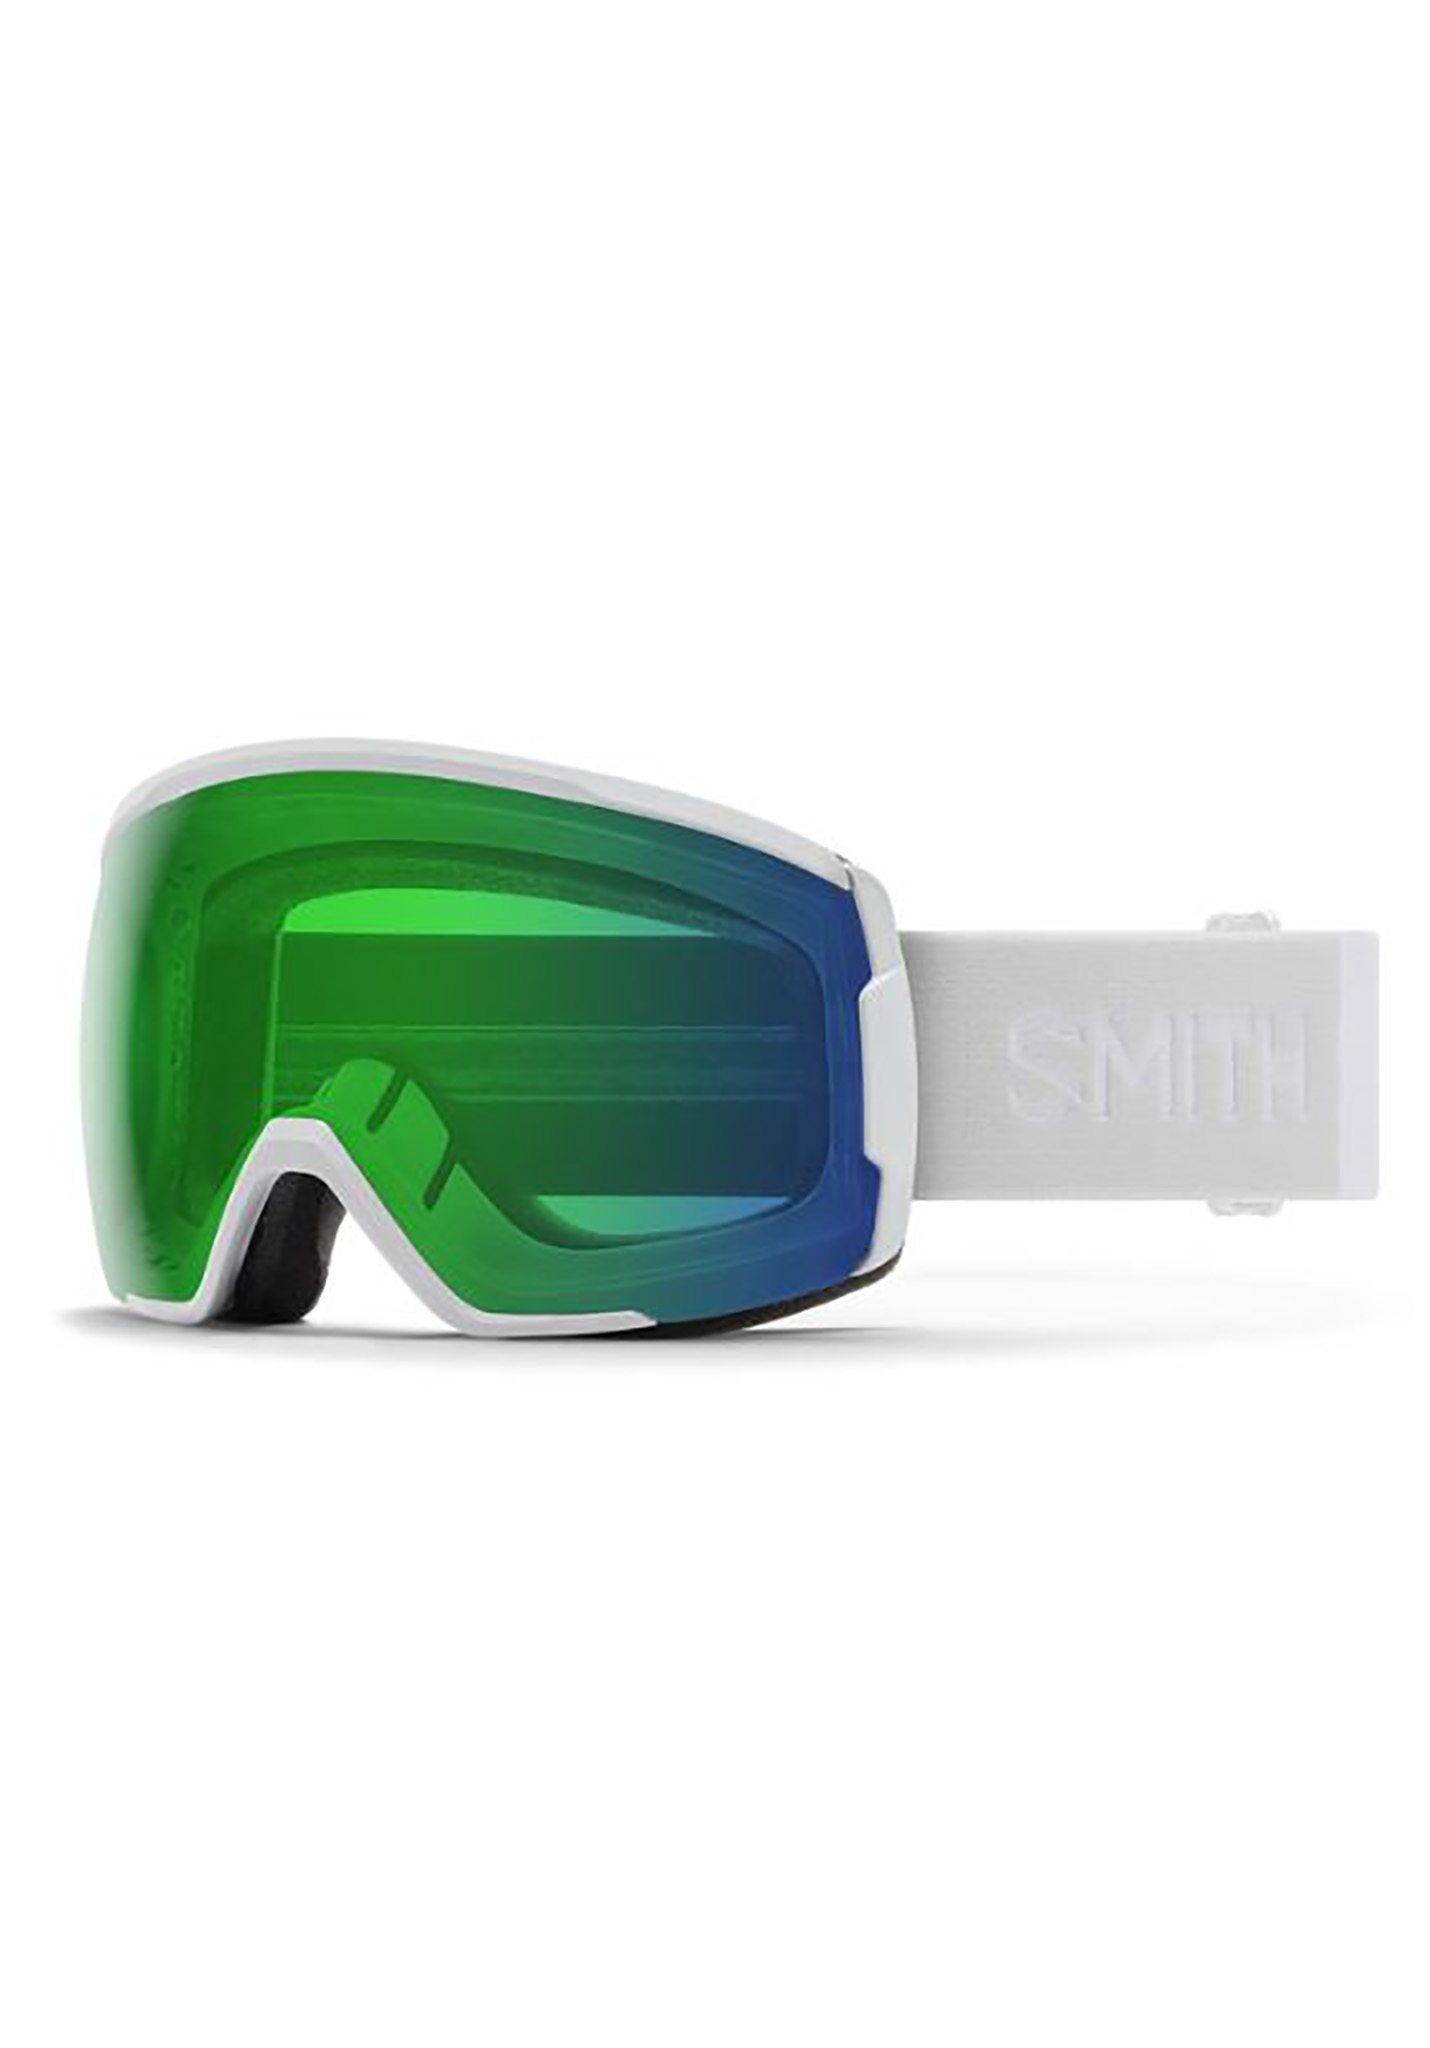 Smith Proxy Snowboardbrillen grün/blau One Size